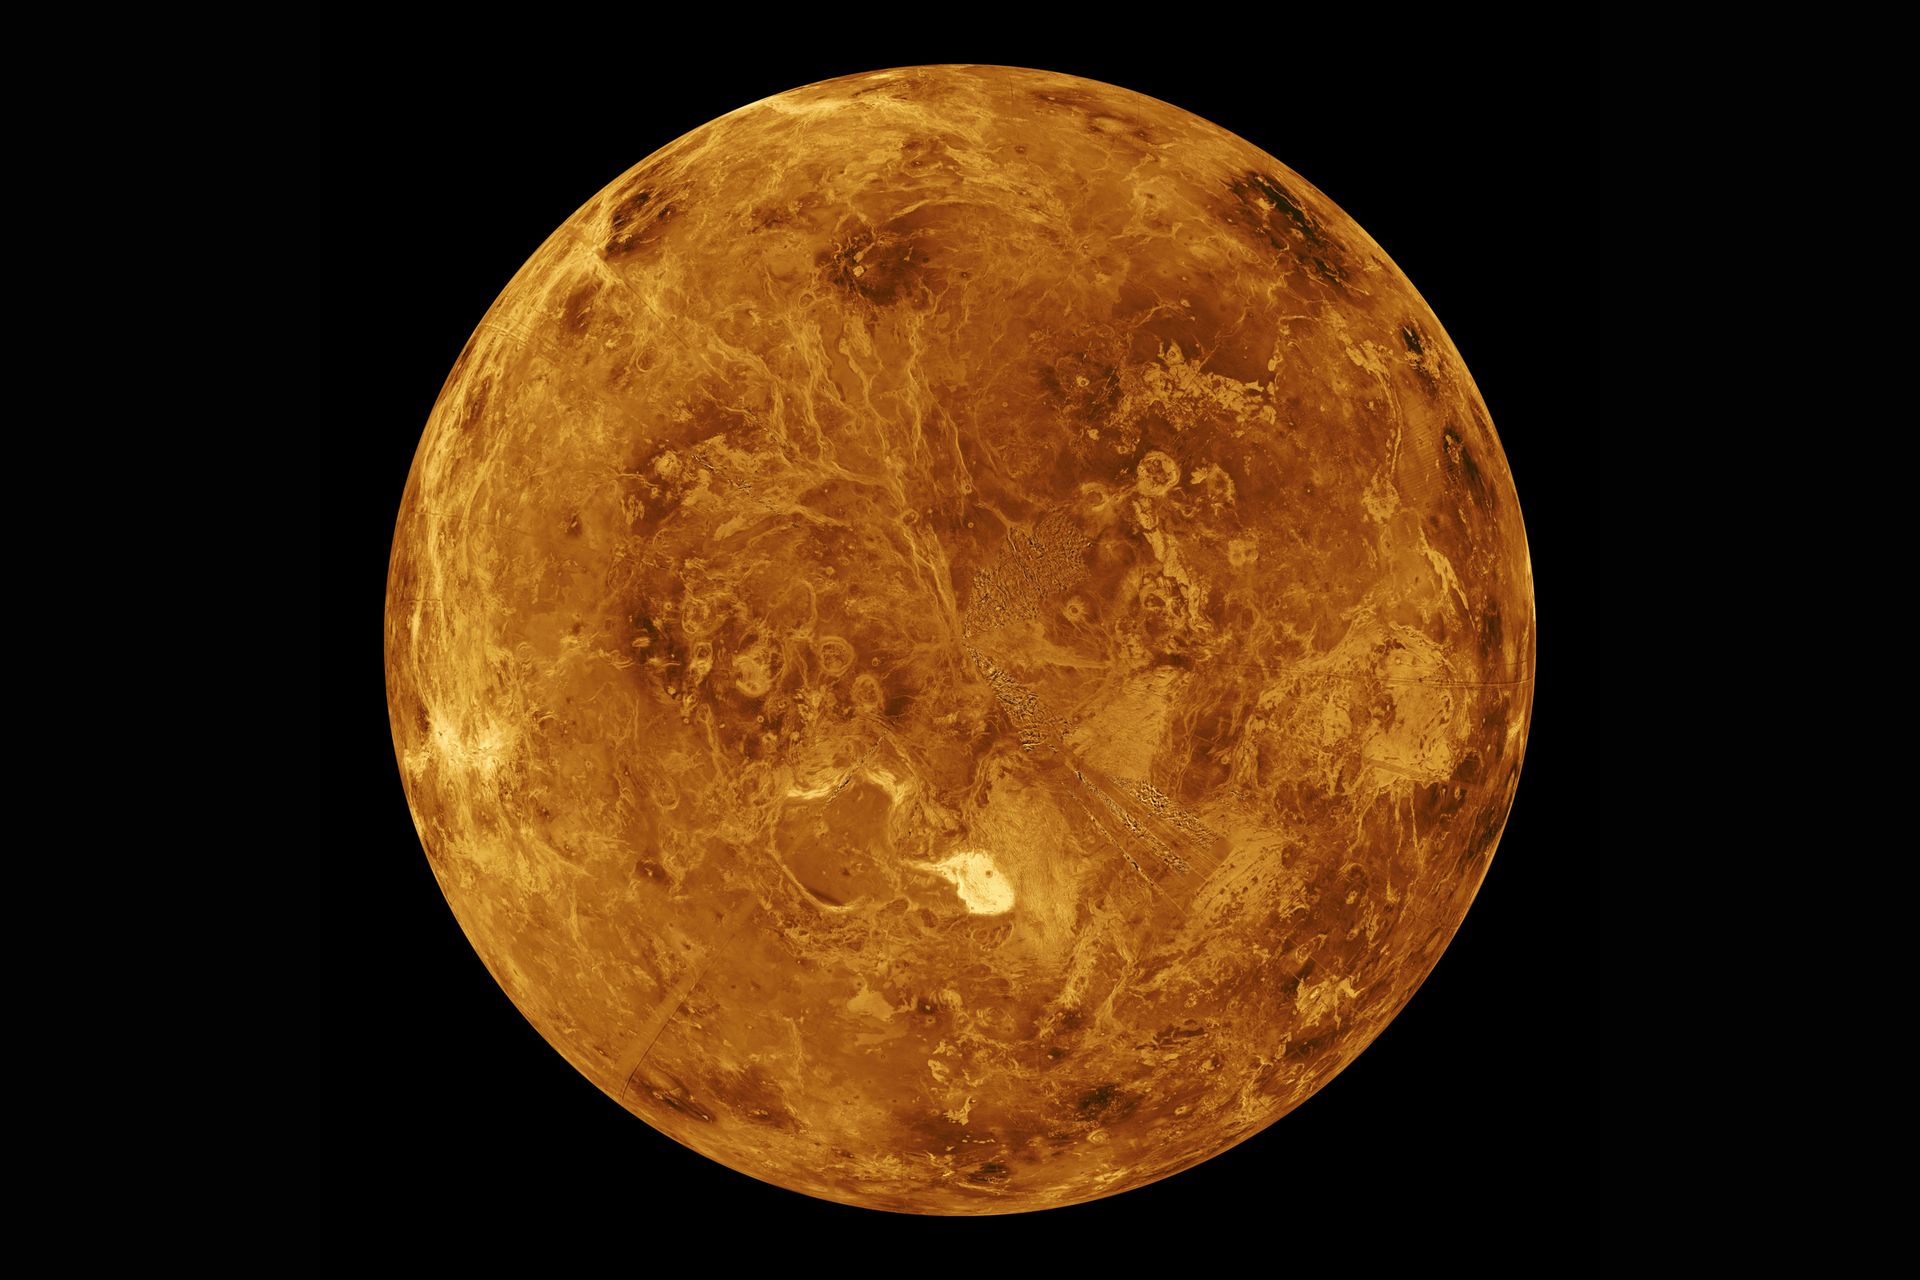 Venus machine sucking vegaslife images